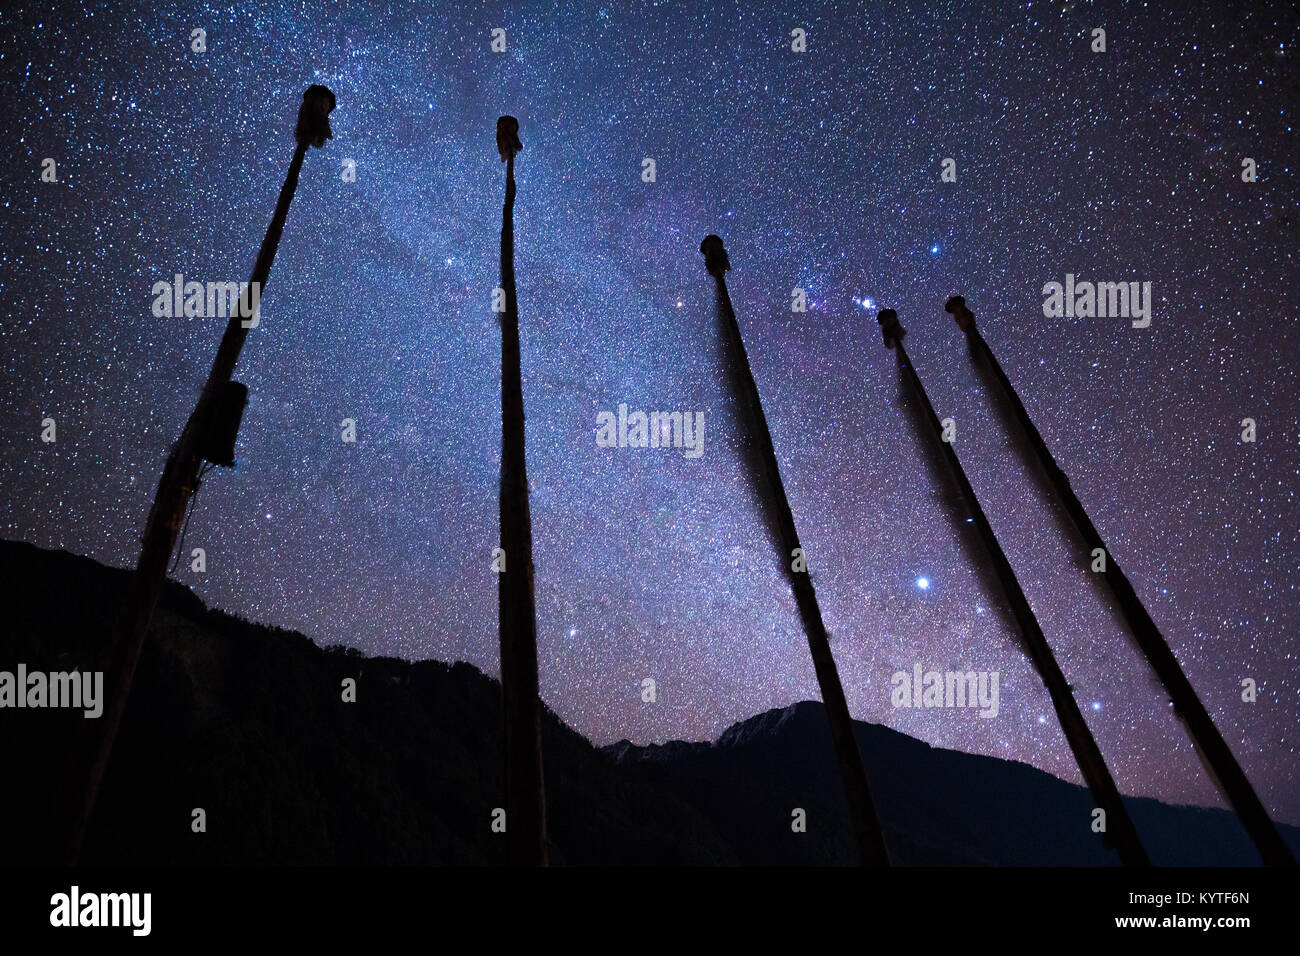 Milliarden von Sternen schmücken den Nachthimmel über verschneite Berge von Lachen Dorf im Norden von Sikkim, Indien. Astro Fotografie im Nordosten Indiens. Stockfoto